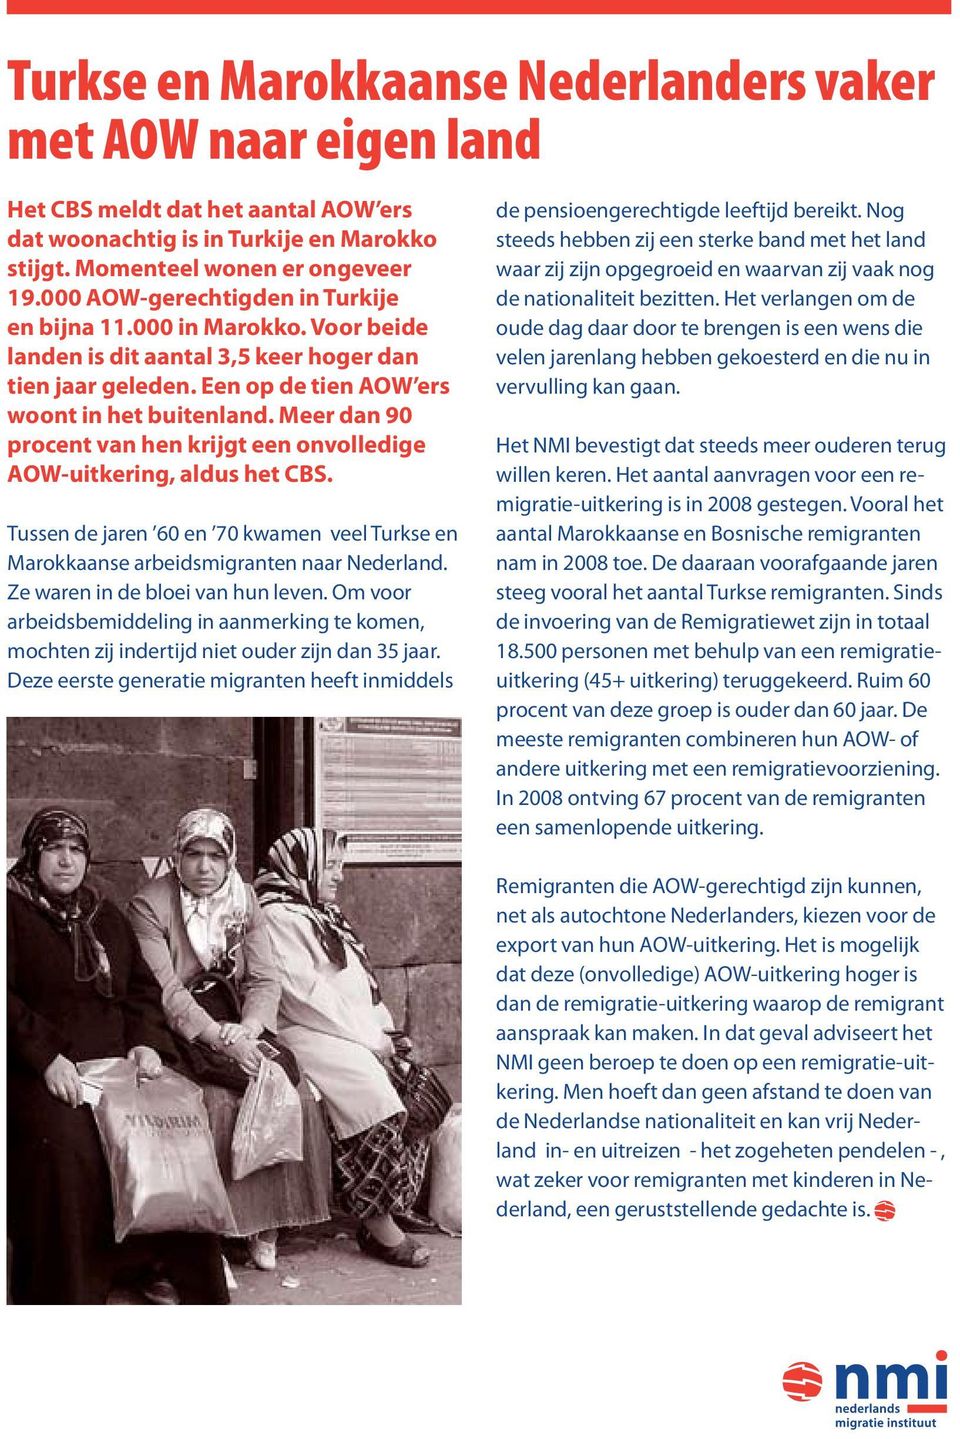 Meer dan 90 procent van hen krijgt een onvolledige AOW-uitkering, aldus het CBS. Tussen de jaren 60 en 70 kwamen veel Turkse en Marokkaanse arbeidsmigranten naar Nederland.